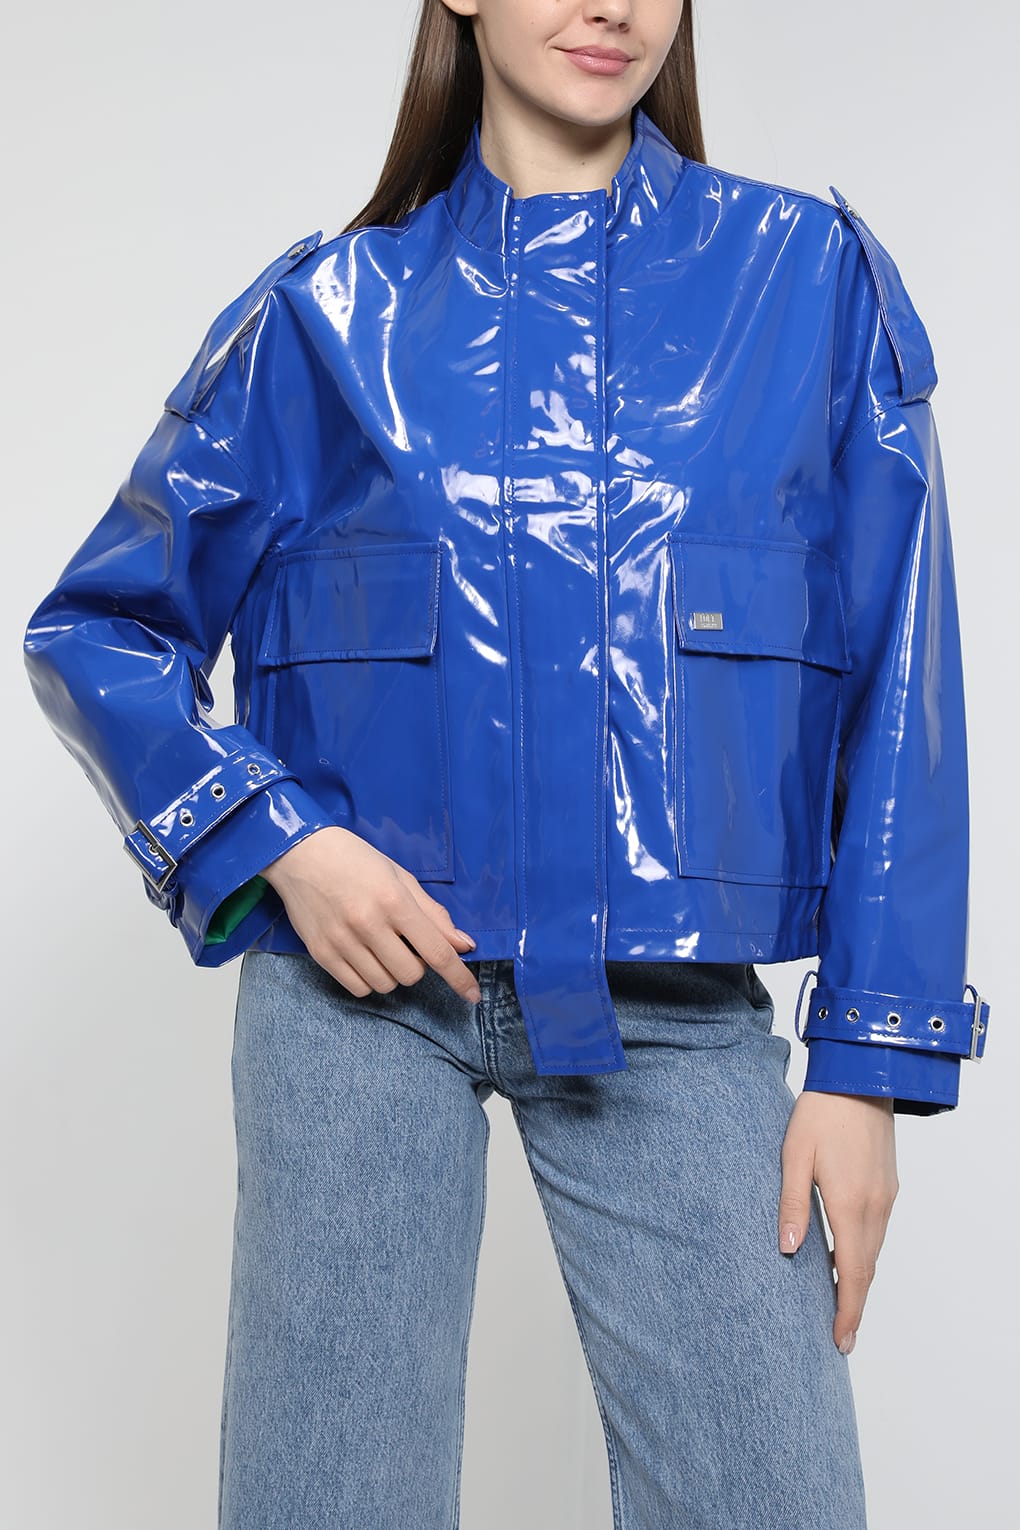 Кожаная куртка женская Loft LF2032892 голубая XS